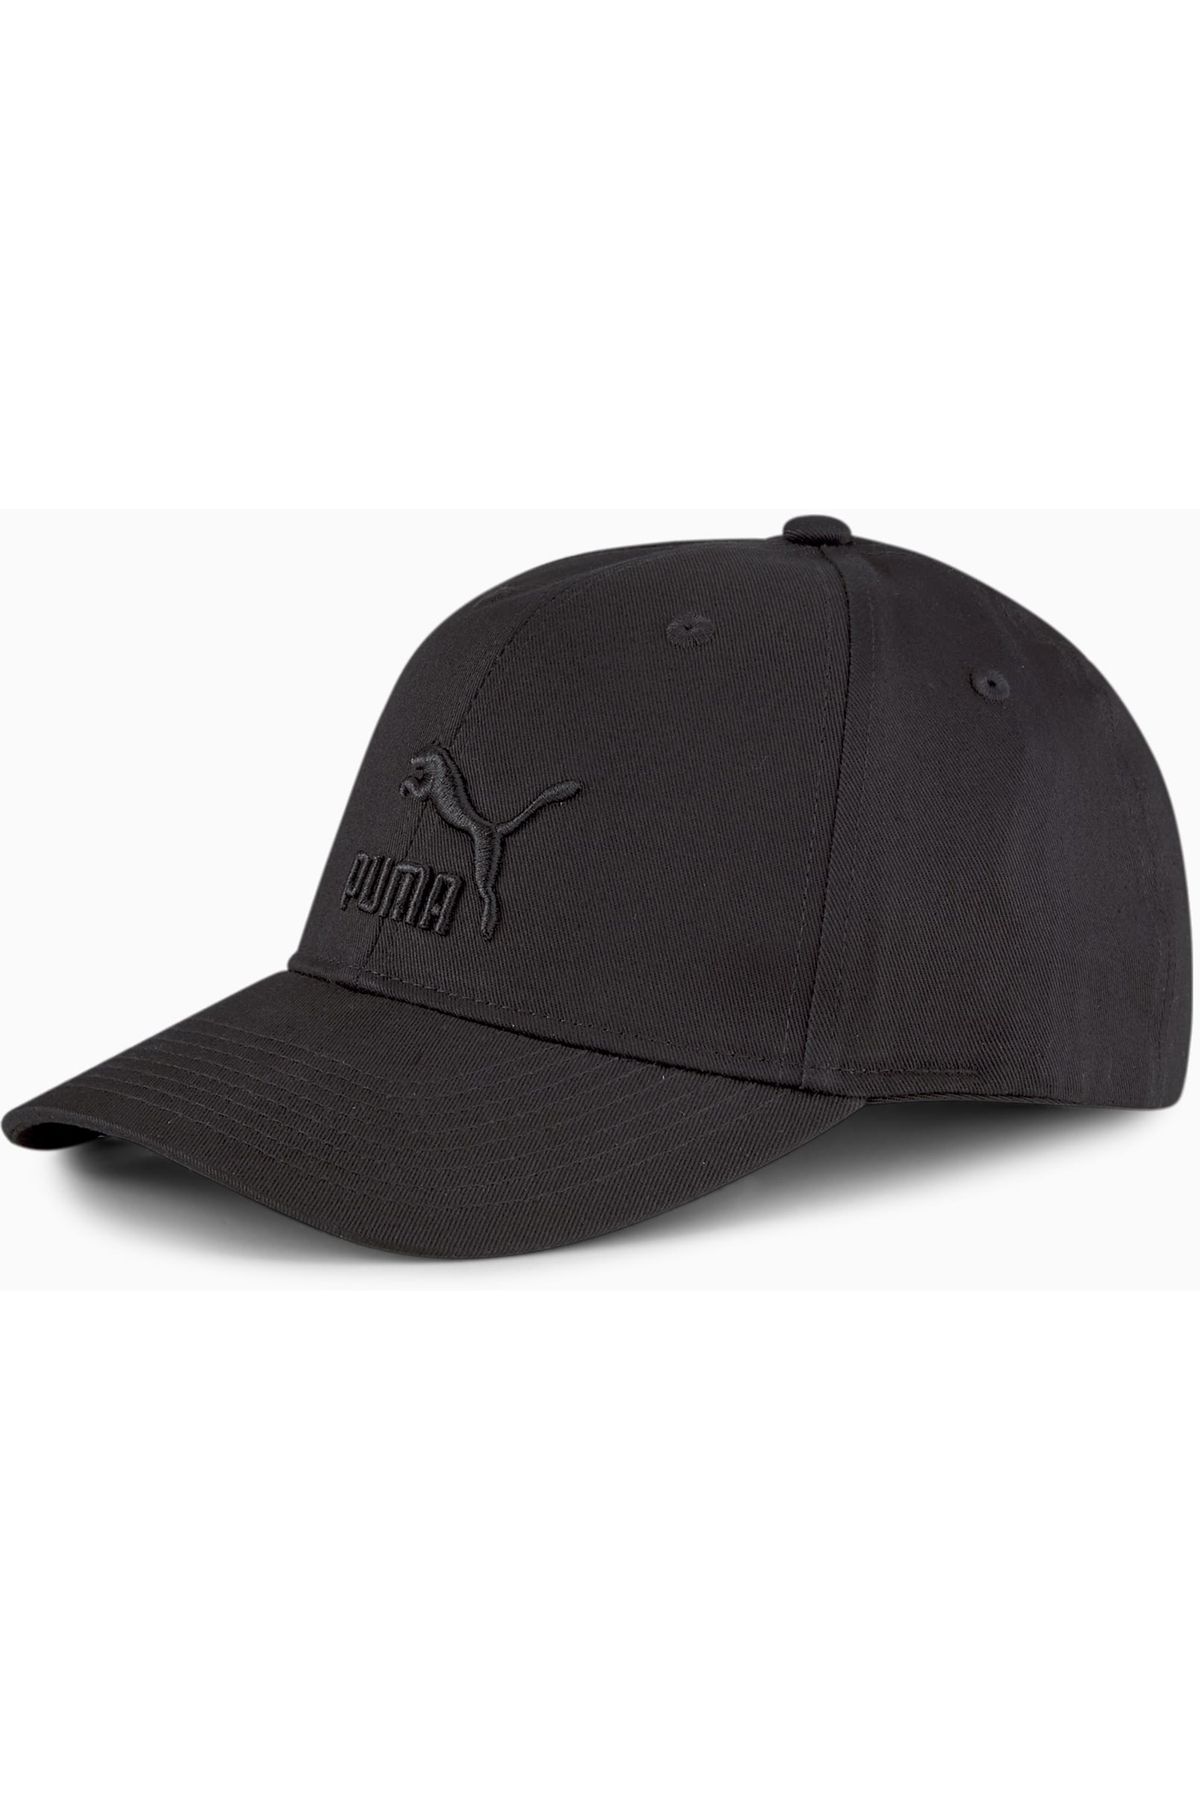 Puma Archive Siyah Şapka (022554-15)